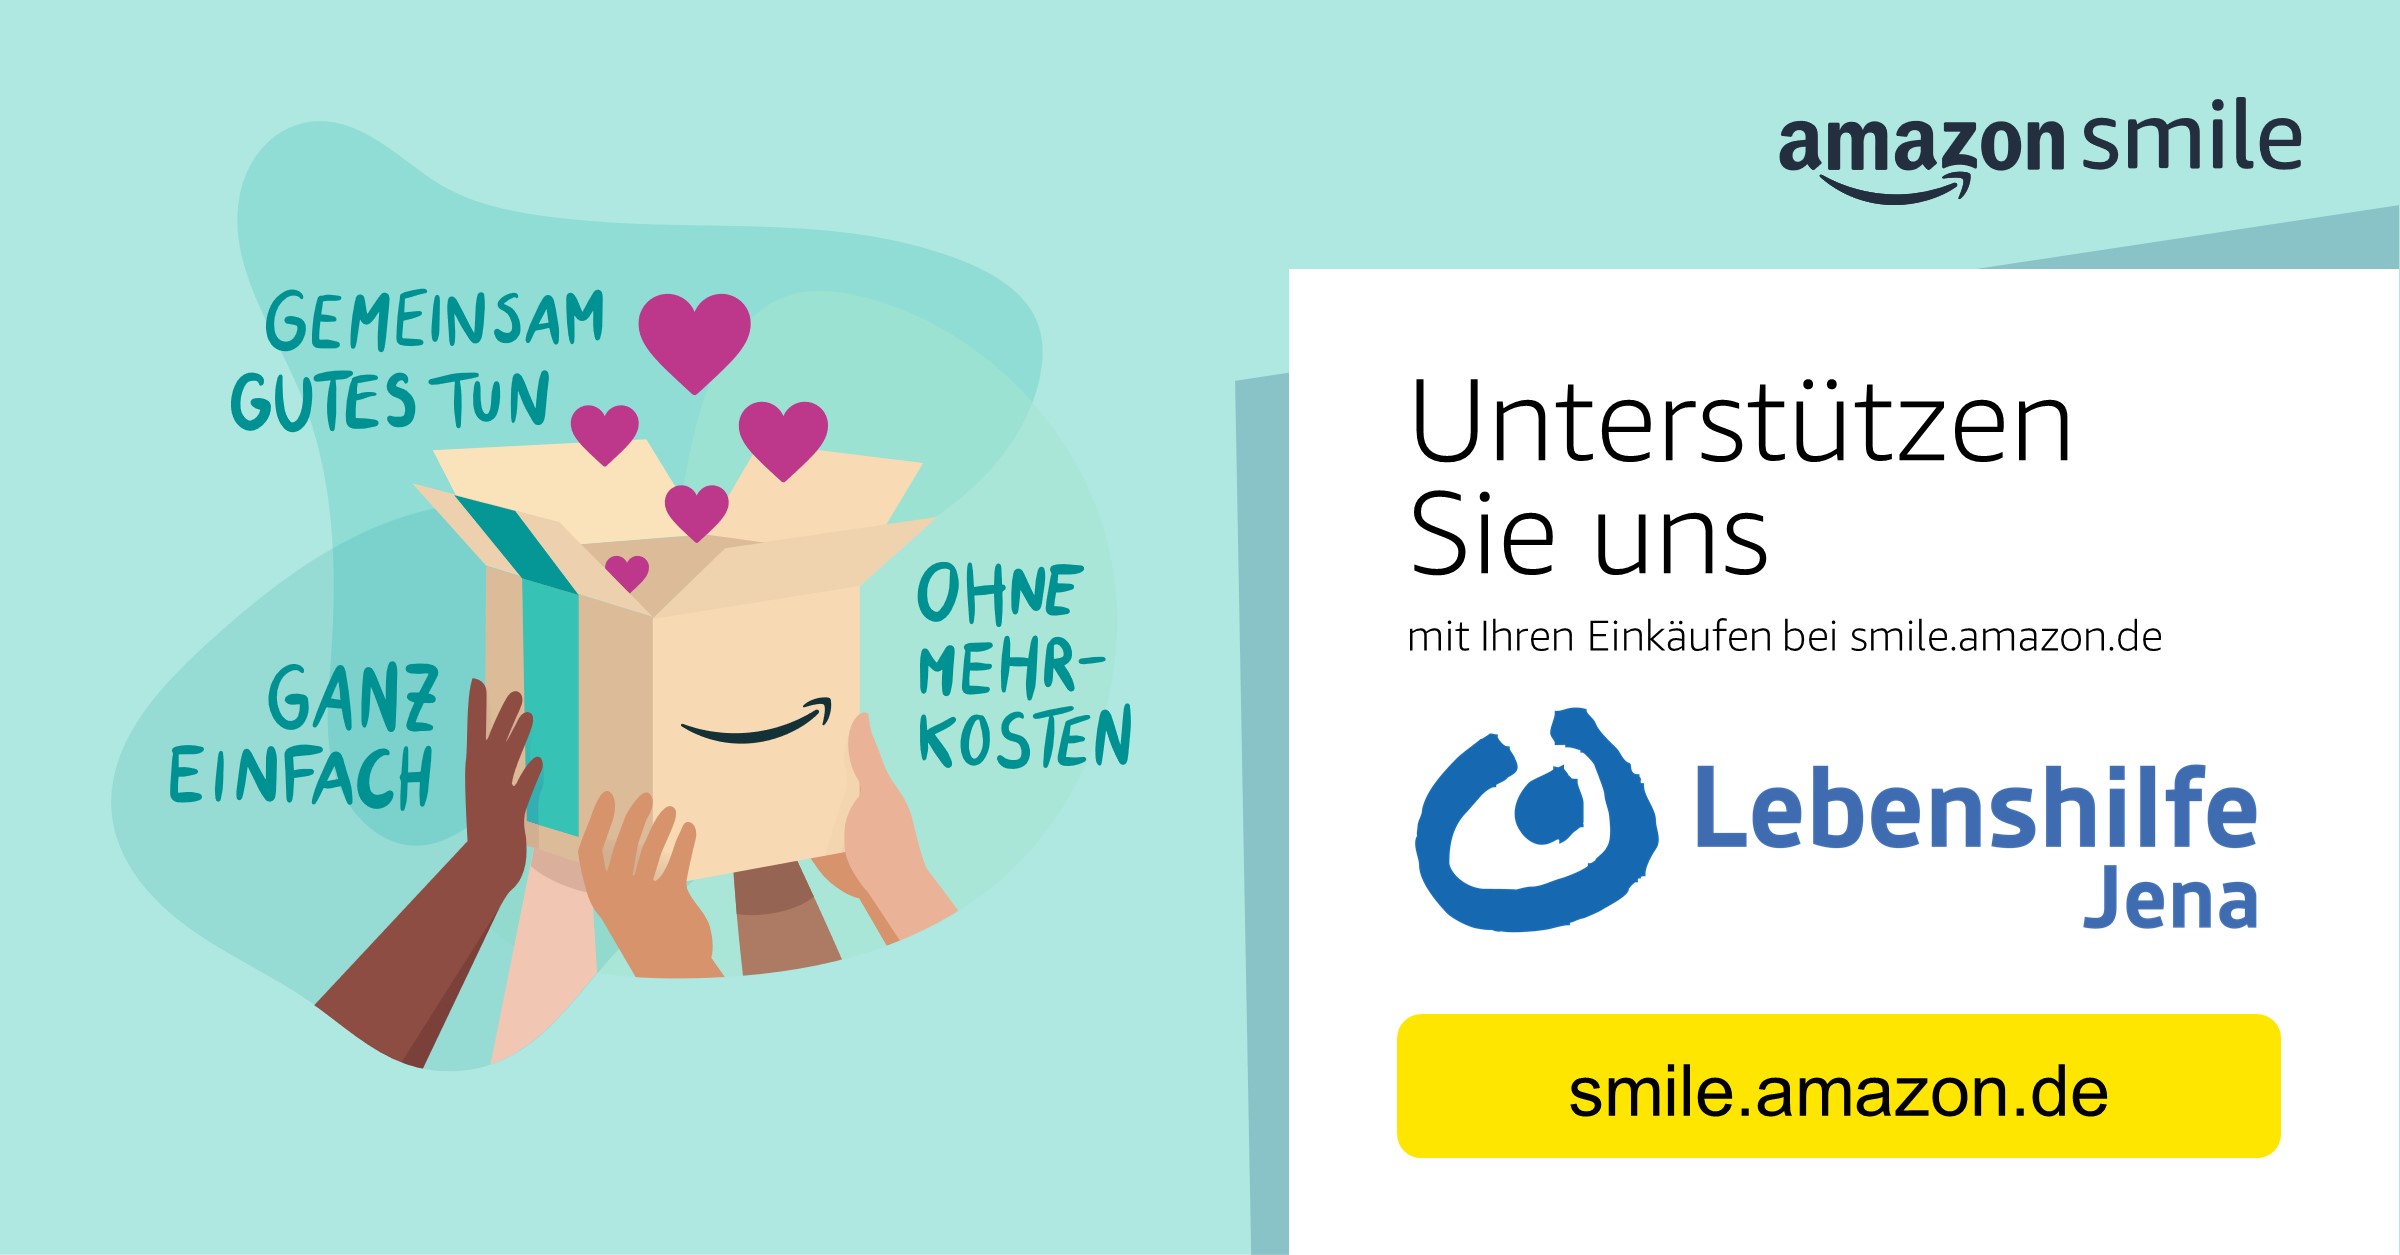 Das ist ein Banner von Amazon Smile. Viele Hände halten einen Karton. Aus dem Karton kommen lila Herzen. Daneben steht: Gemeinsam Gutes tun, ganz einfach, ohne Mehrkosten. Rechts ist das Amazon Smile Logon sowie das Logo der Lebenshilfe Jena.